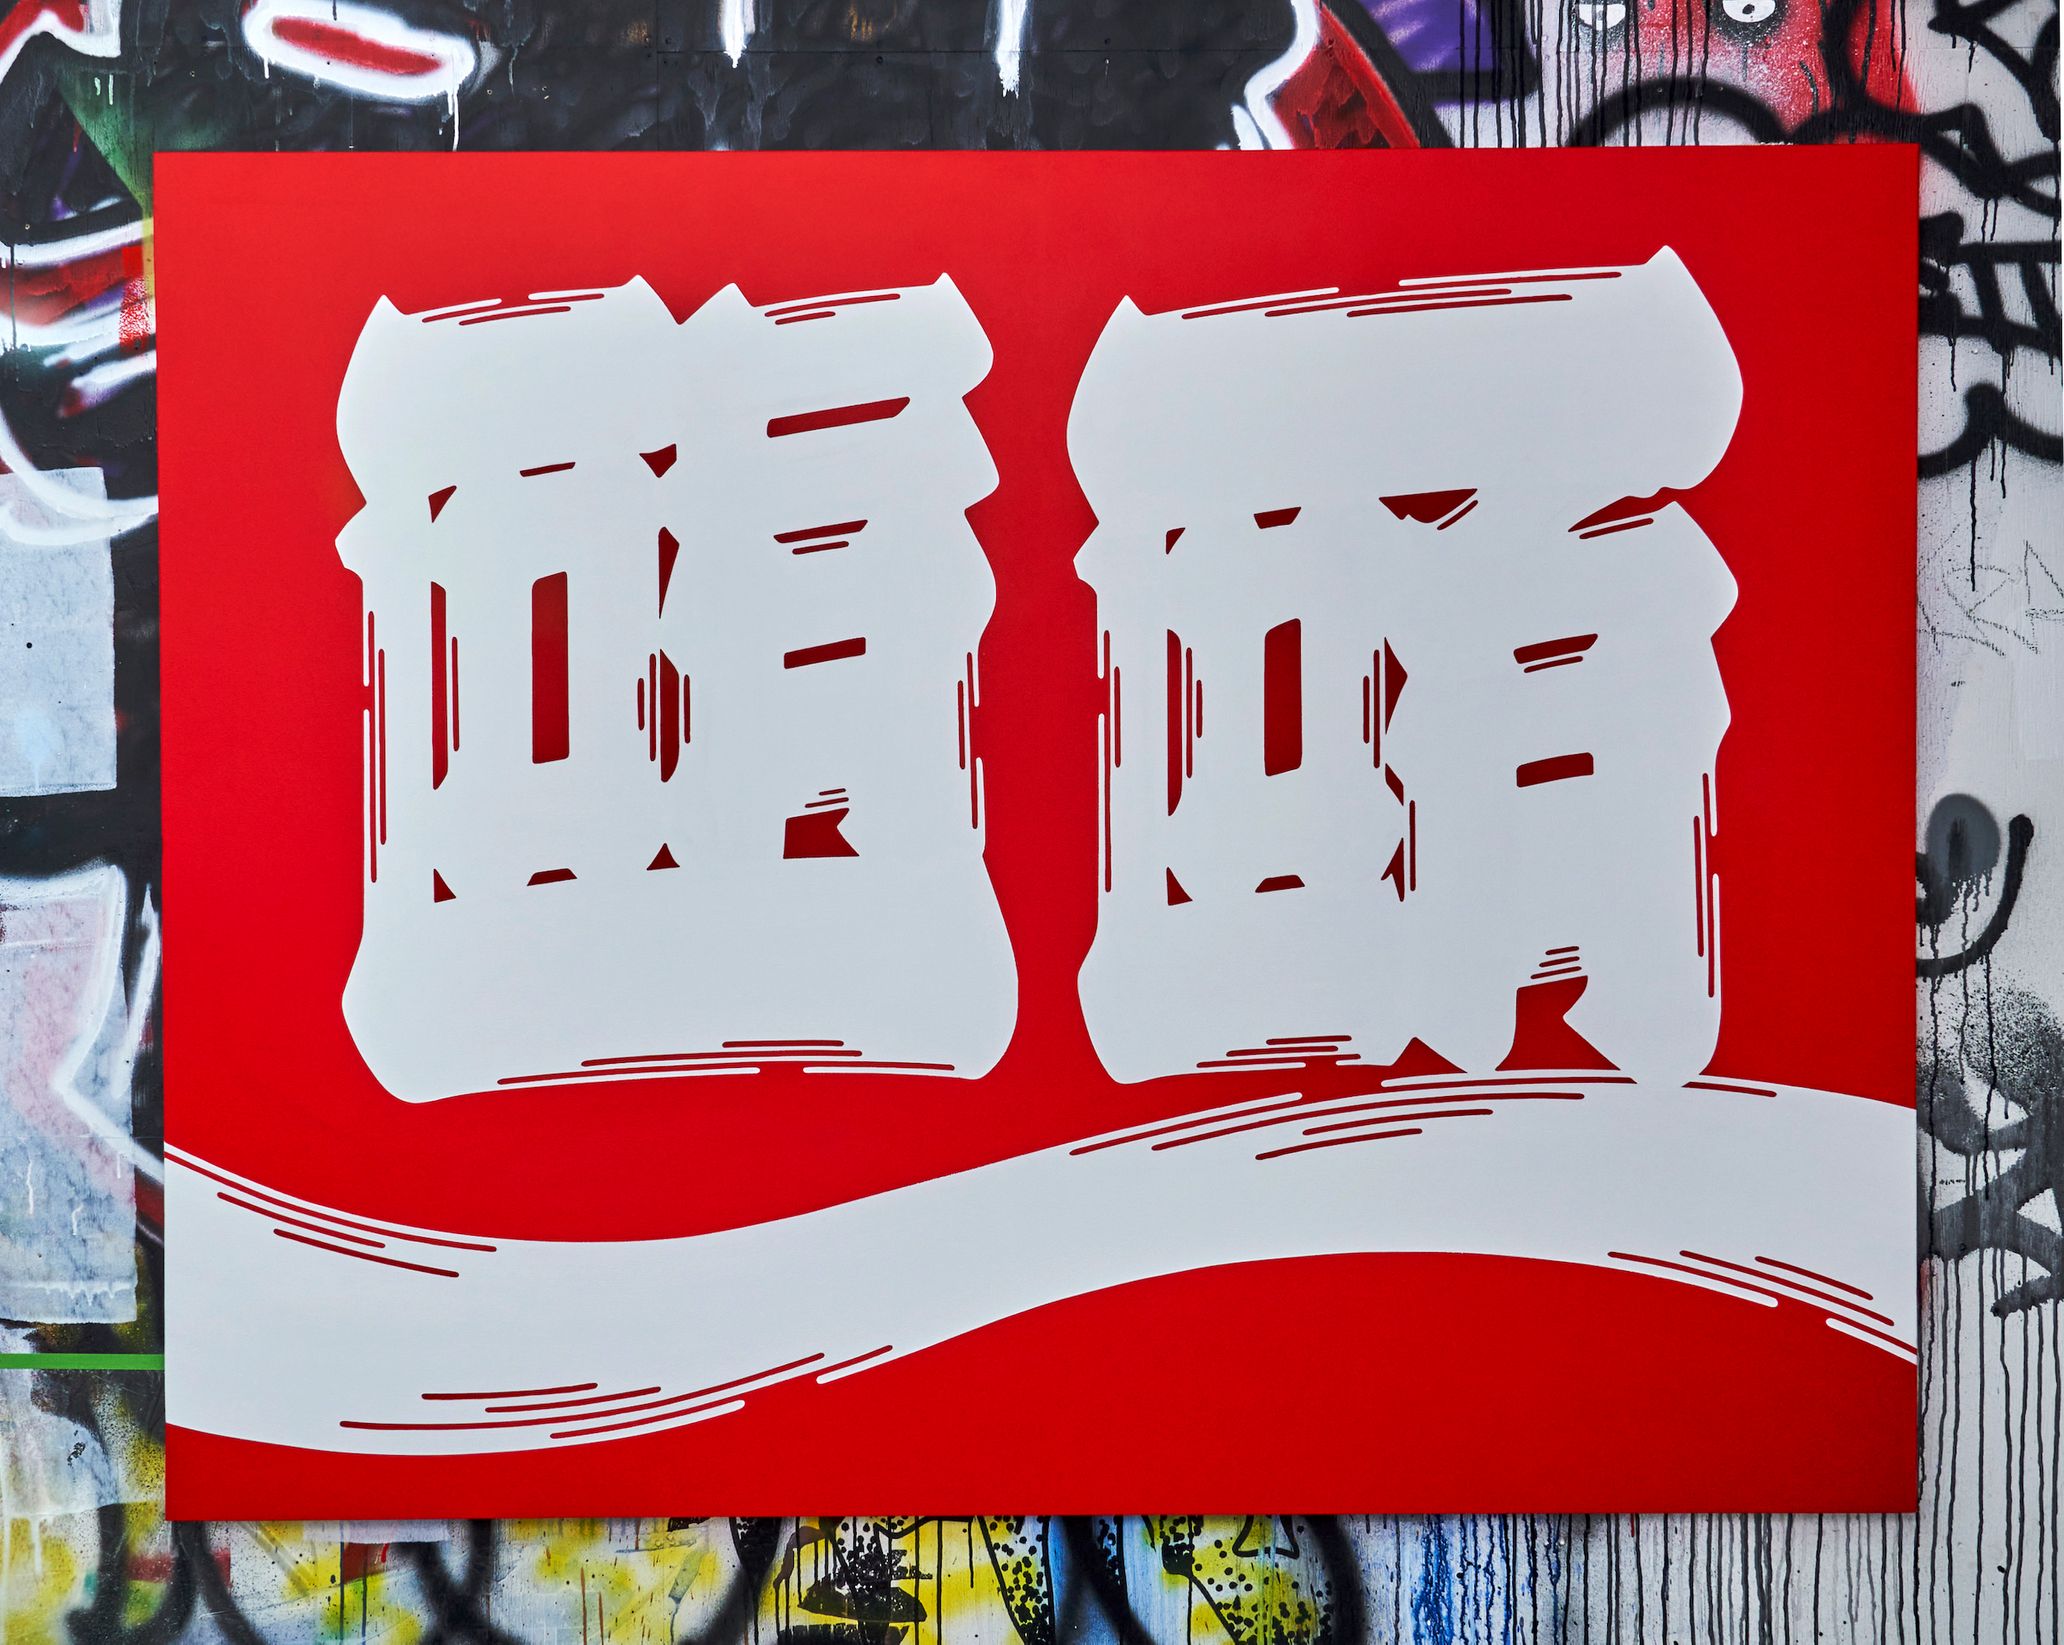 江戸文字とアルファベットが融合した唯一無二のオリジナルグラフィティ作品“Kanji-Graphy／カンジグラフィ”。アーティスト、sneakerwolfが打ち壊す固定概念
